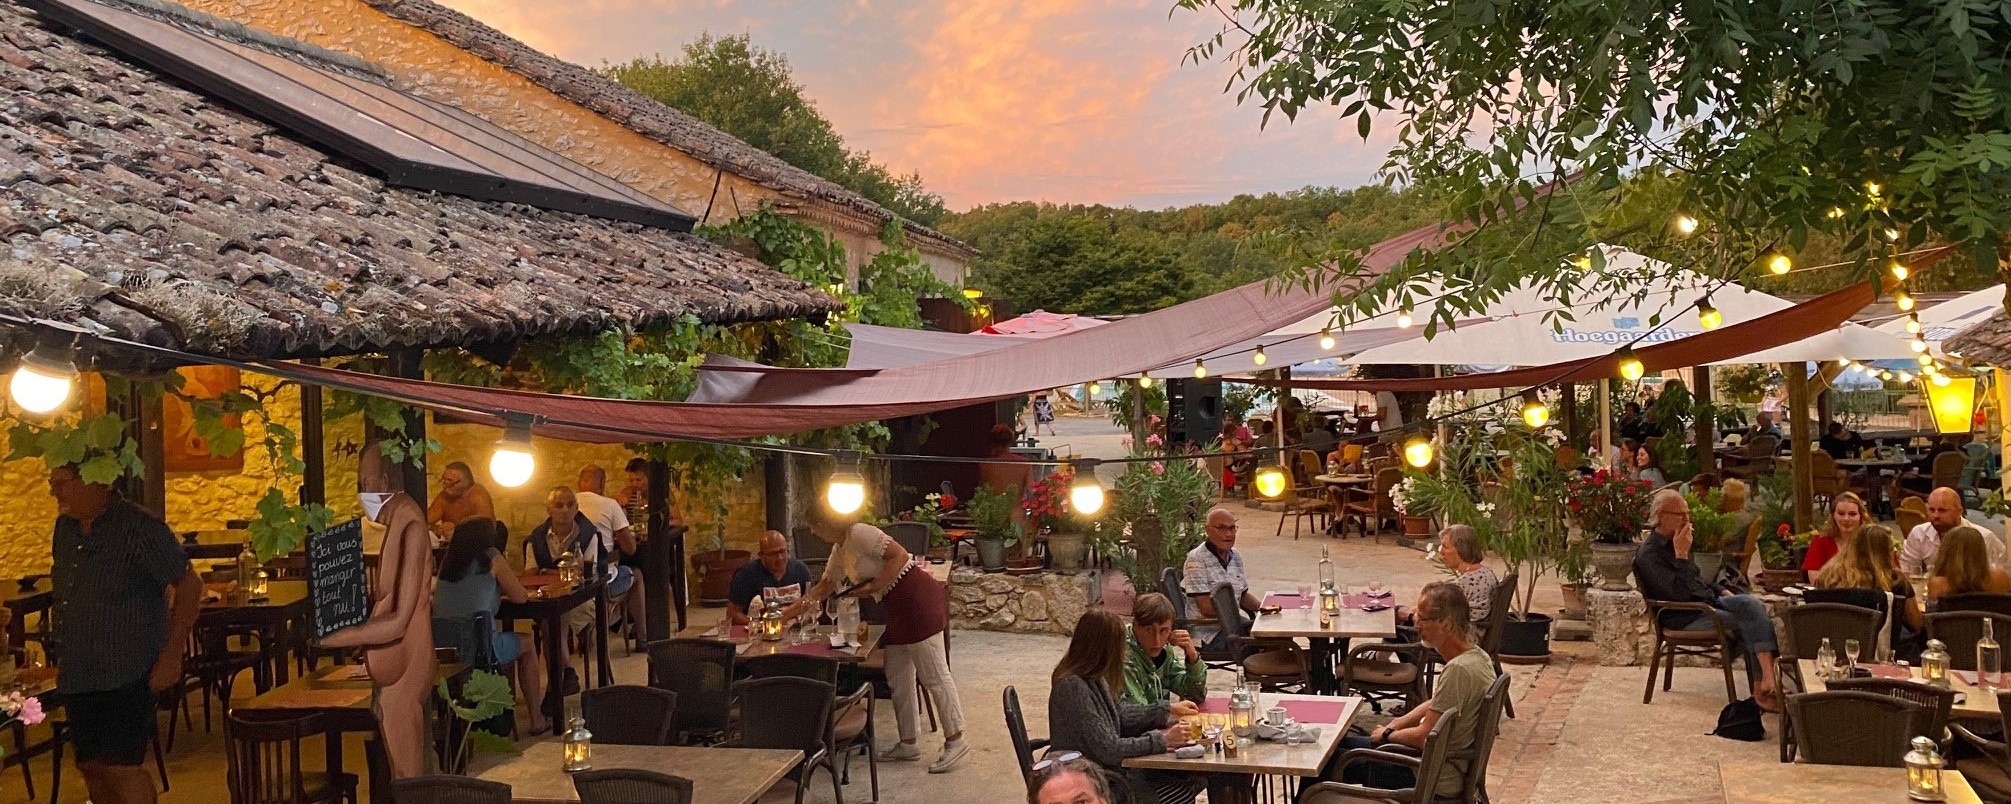 horeca_camping-naturiste_terrasse_restaurant